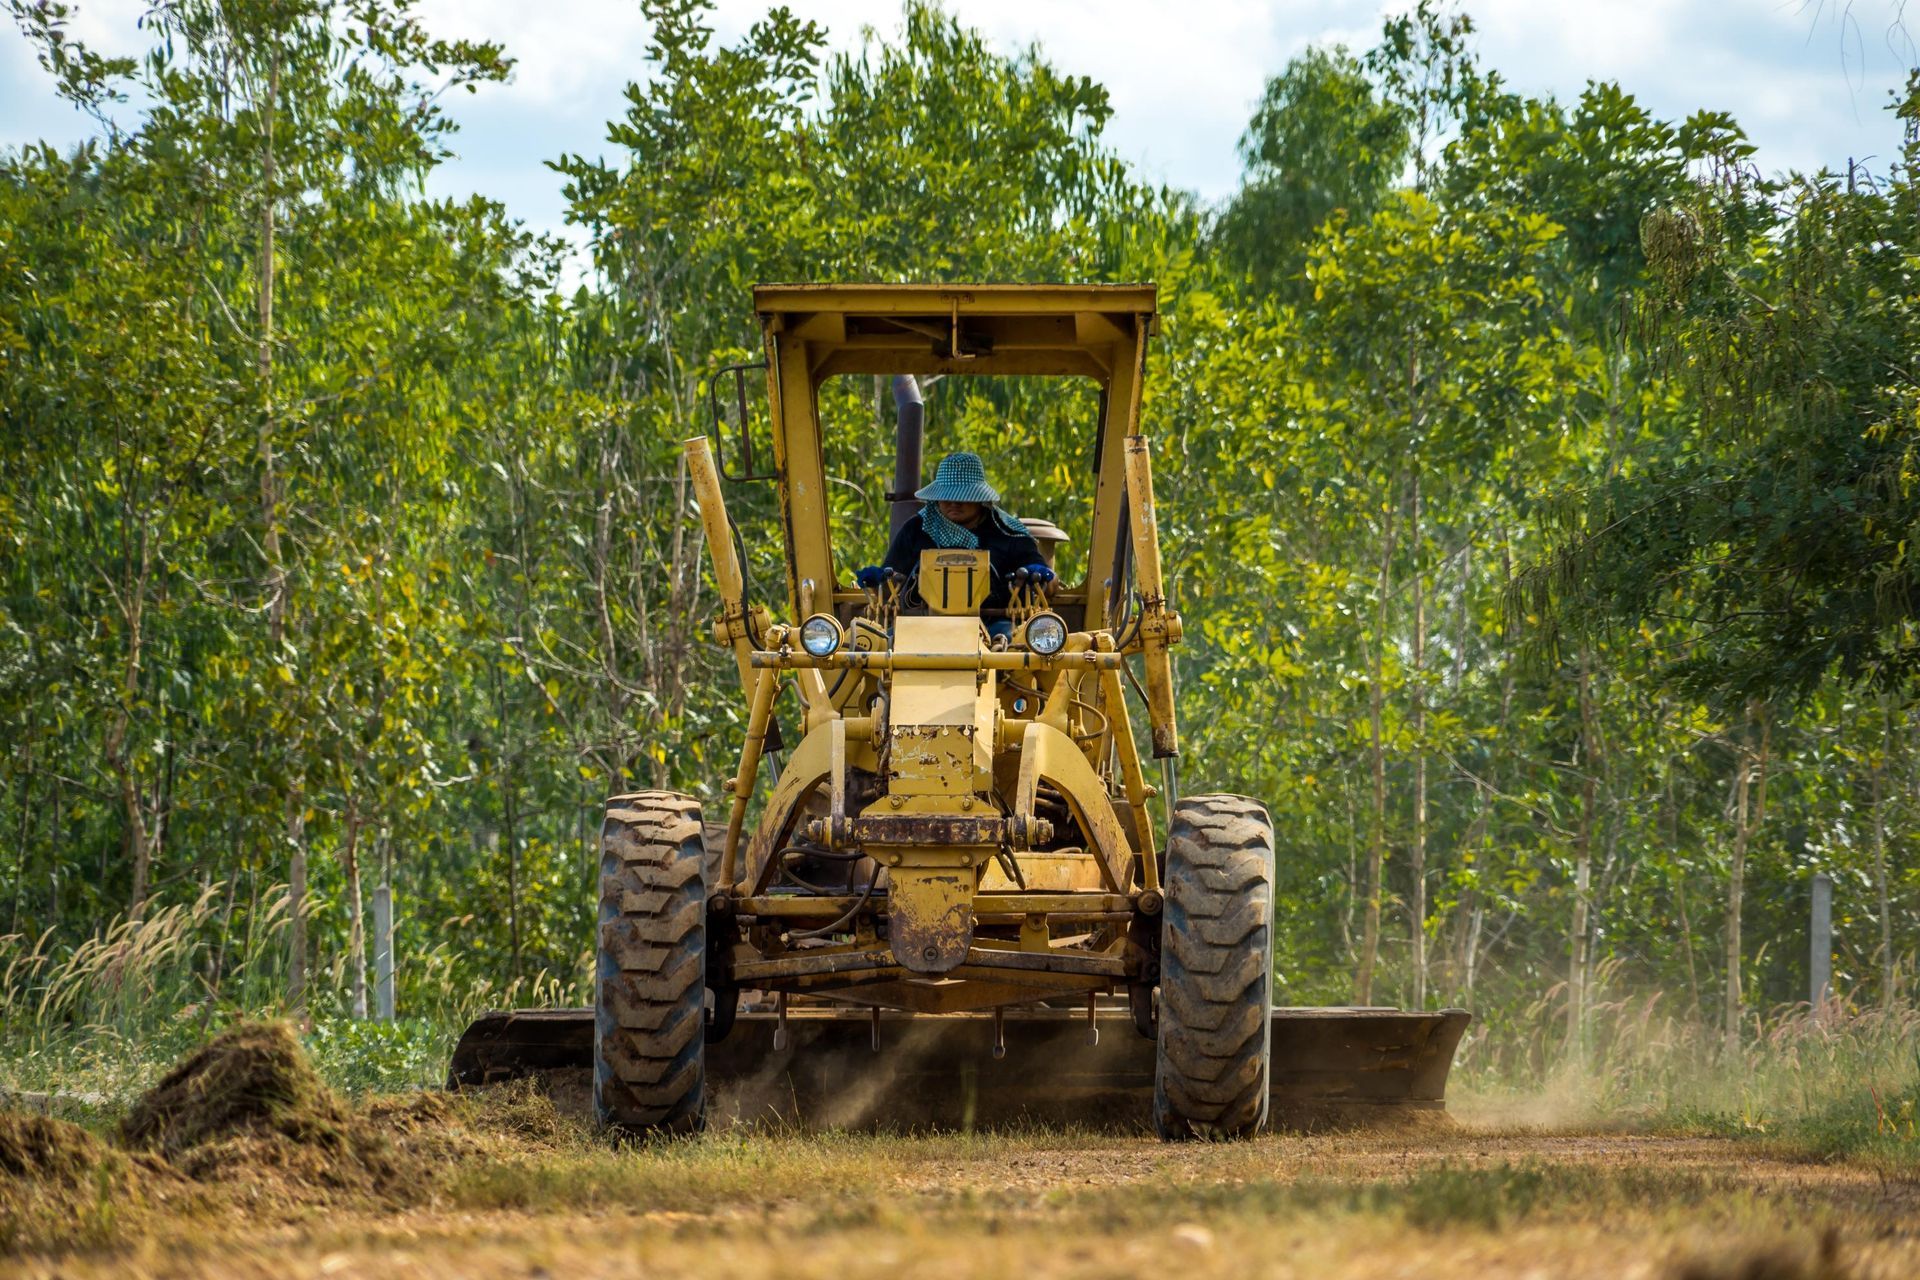 A man is driving a bulldozer through a dirt field.